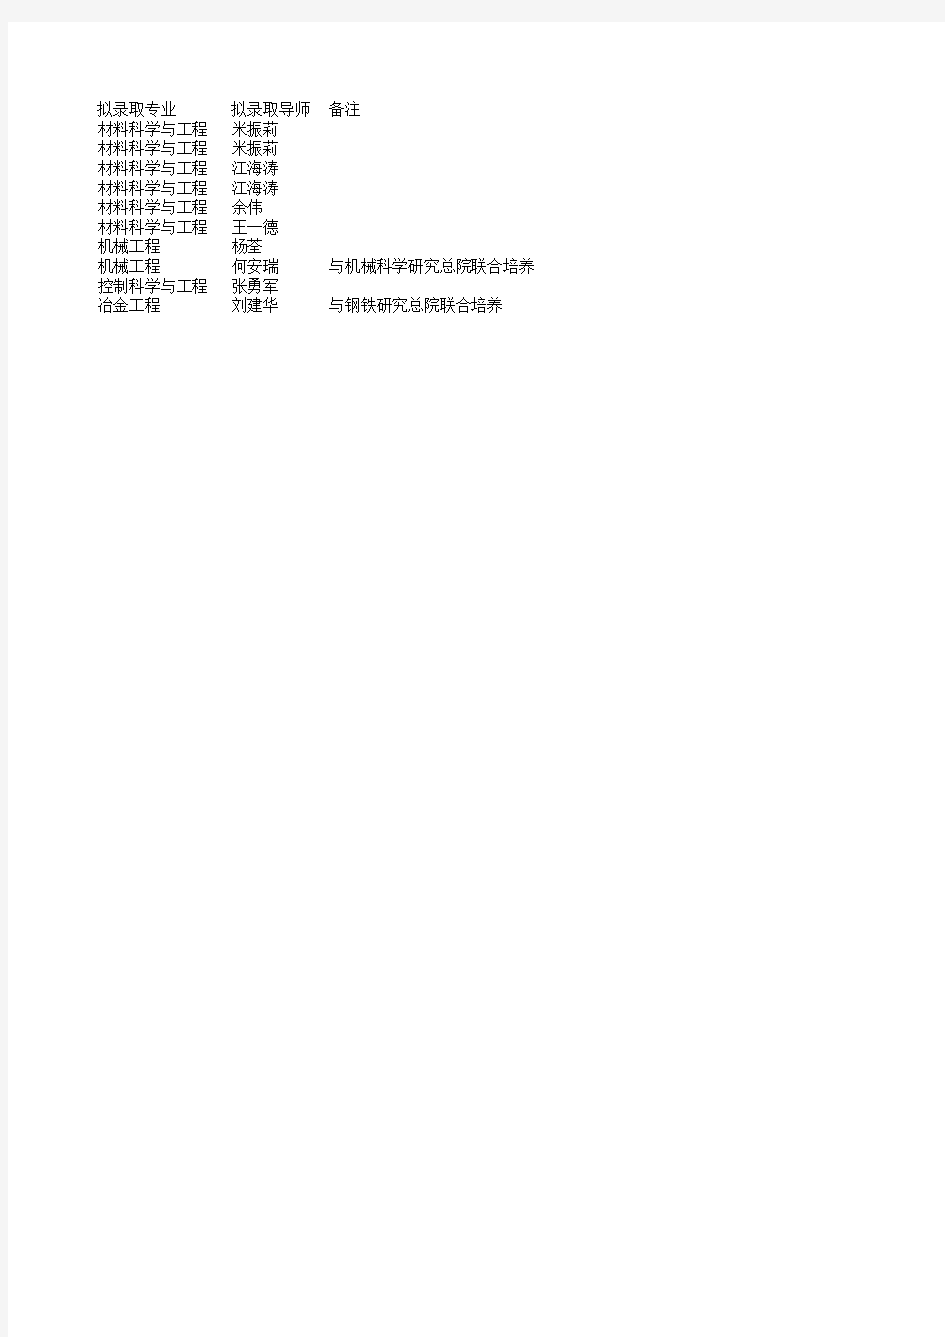 北京科技大学工程技术研究院2019年博士拟录取名单